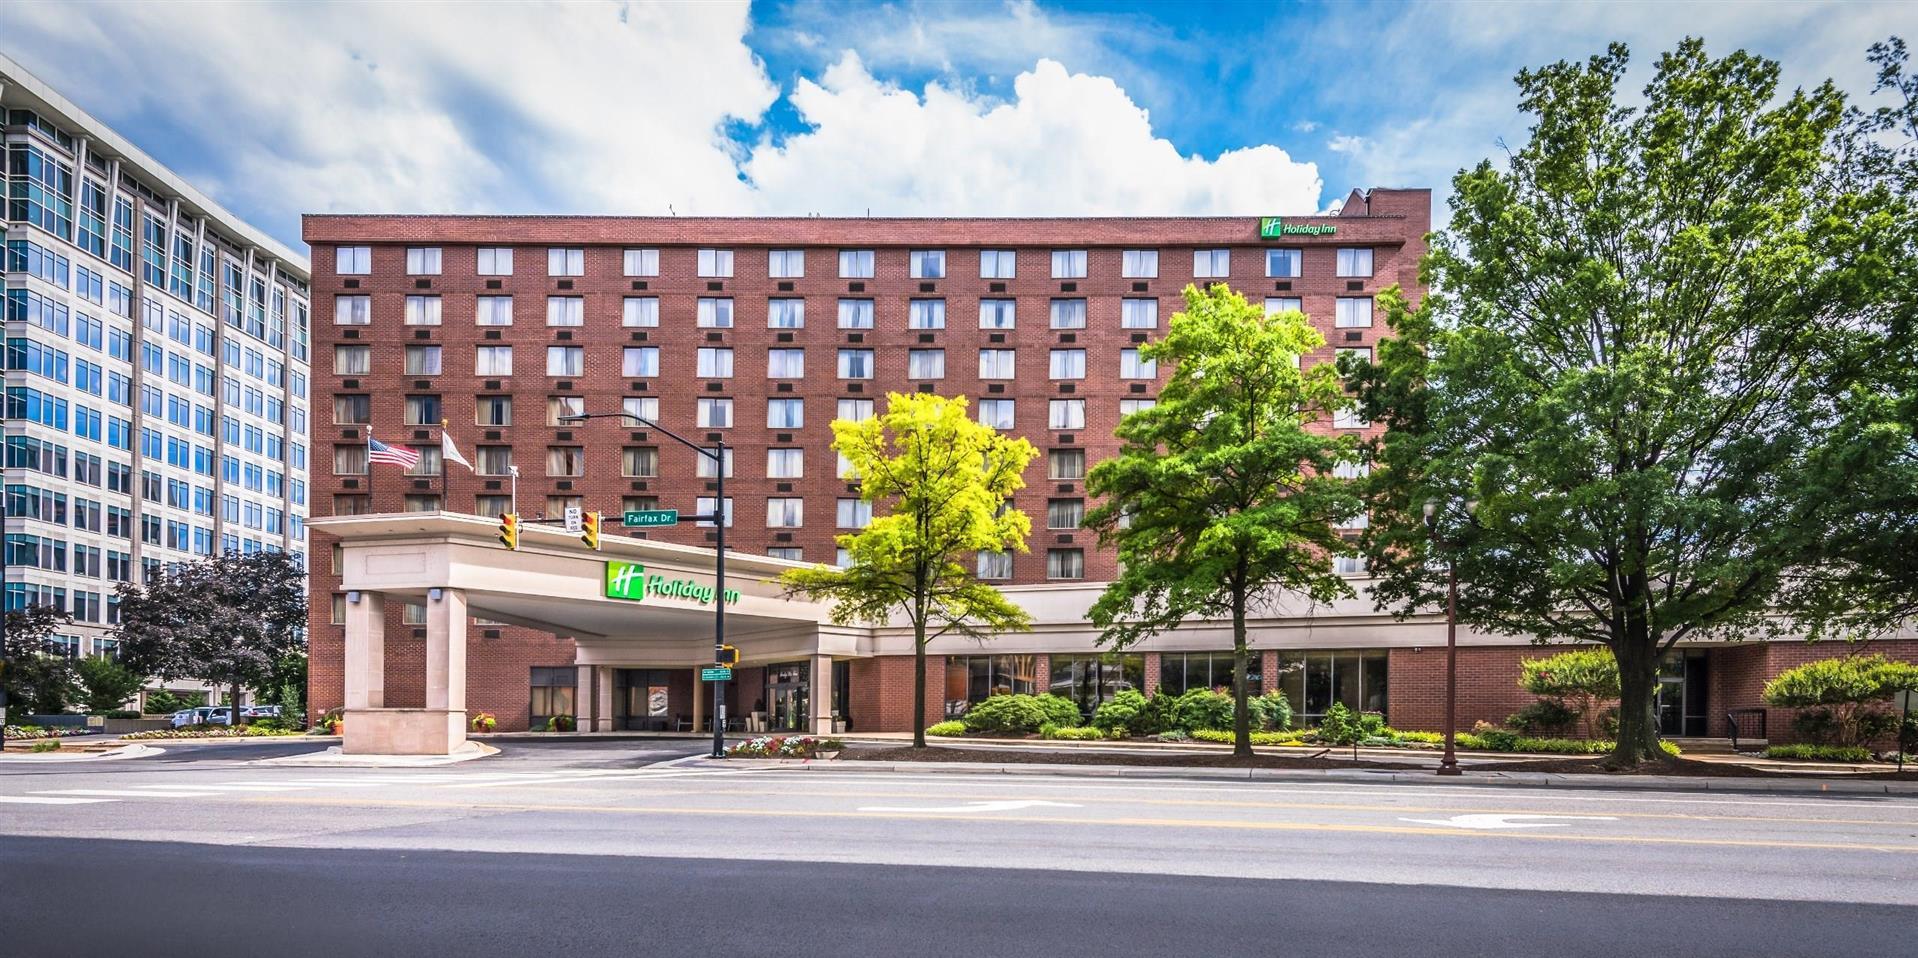 Holiday Inn - Arlington at Ballston in Arlington, VA